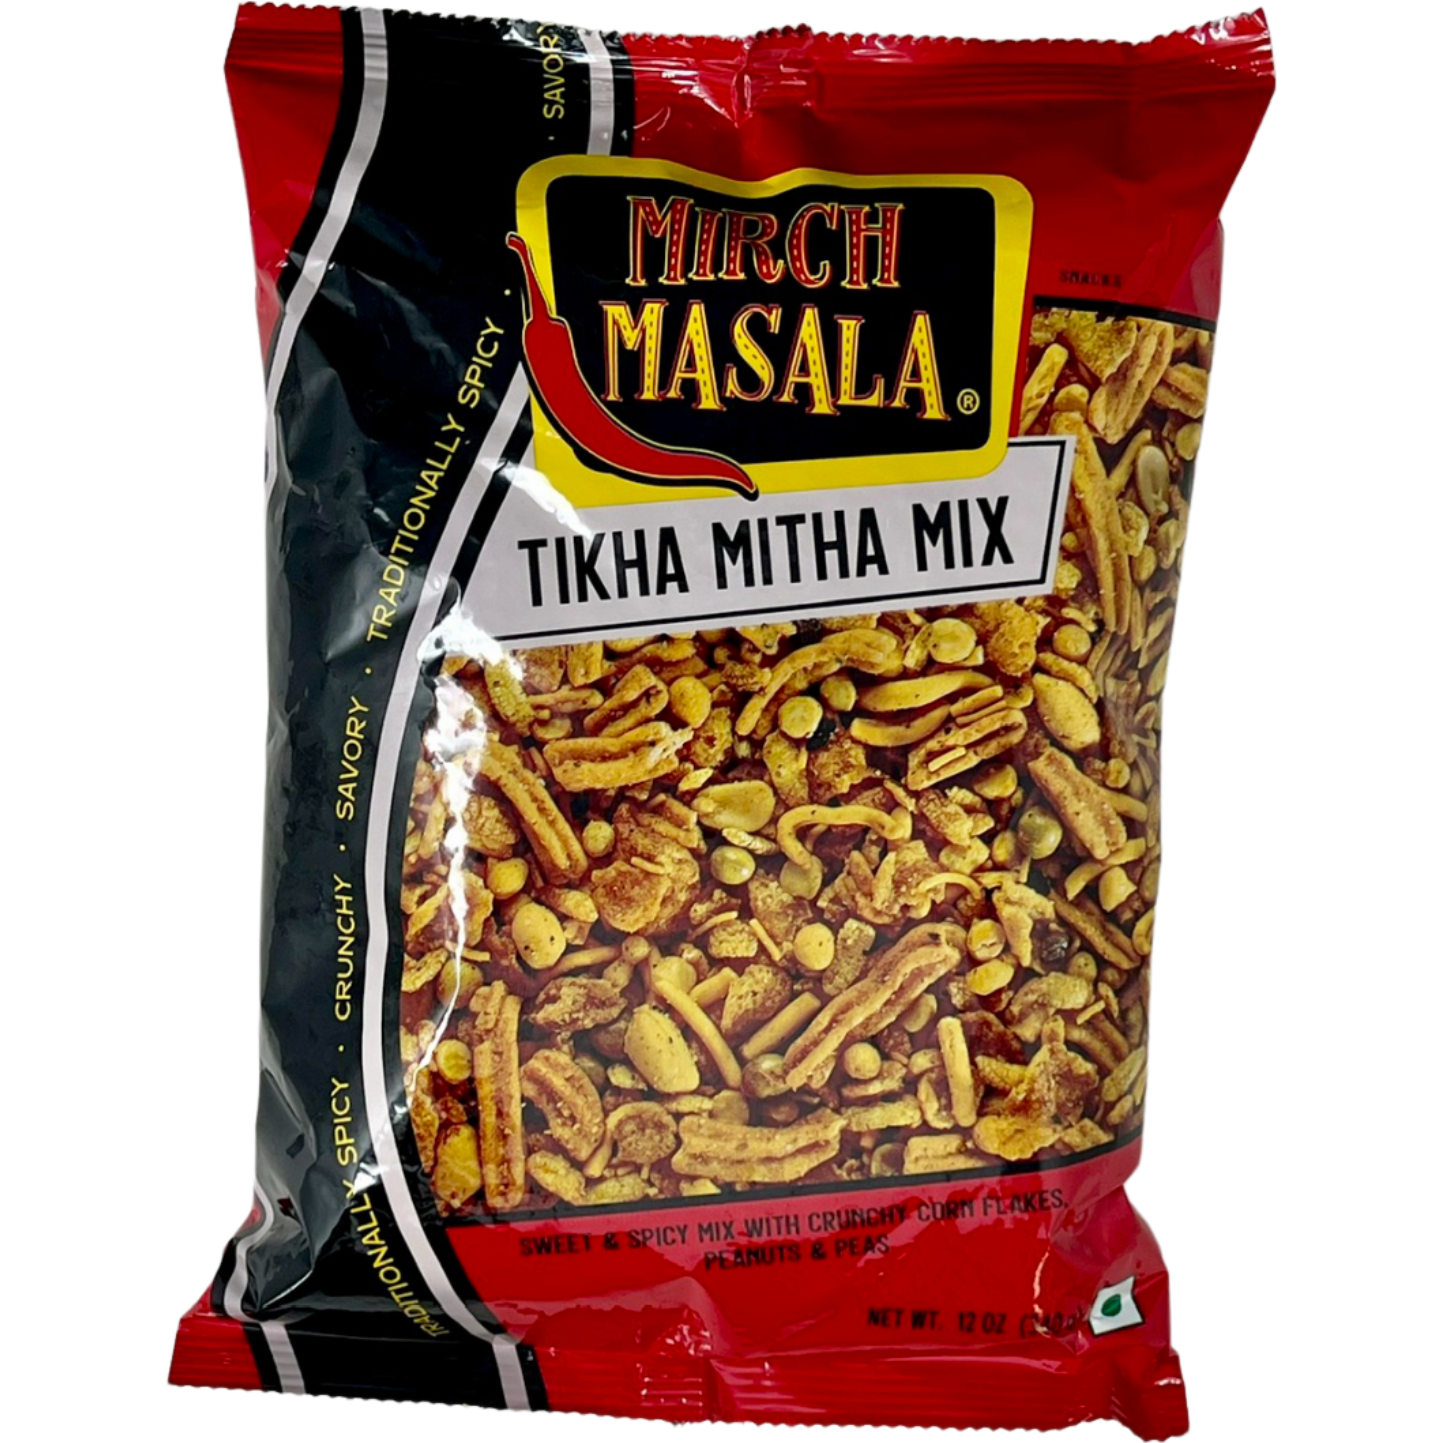 Pack of 2 - Mirch Masala Tikha Mitha Mix - 12 Oz (340 Gm)